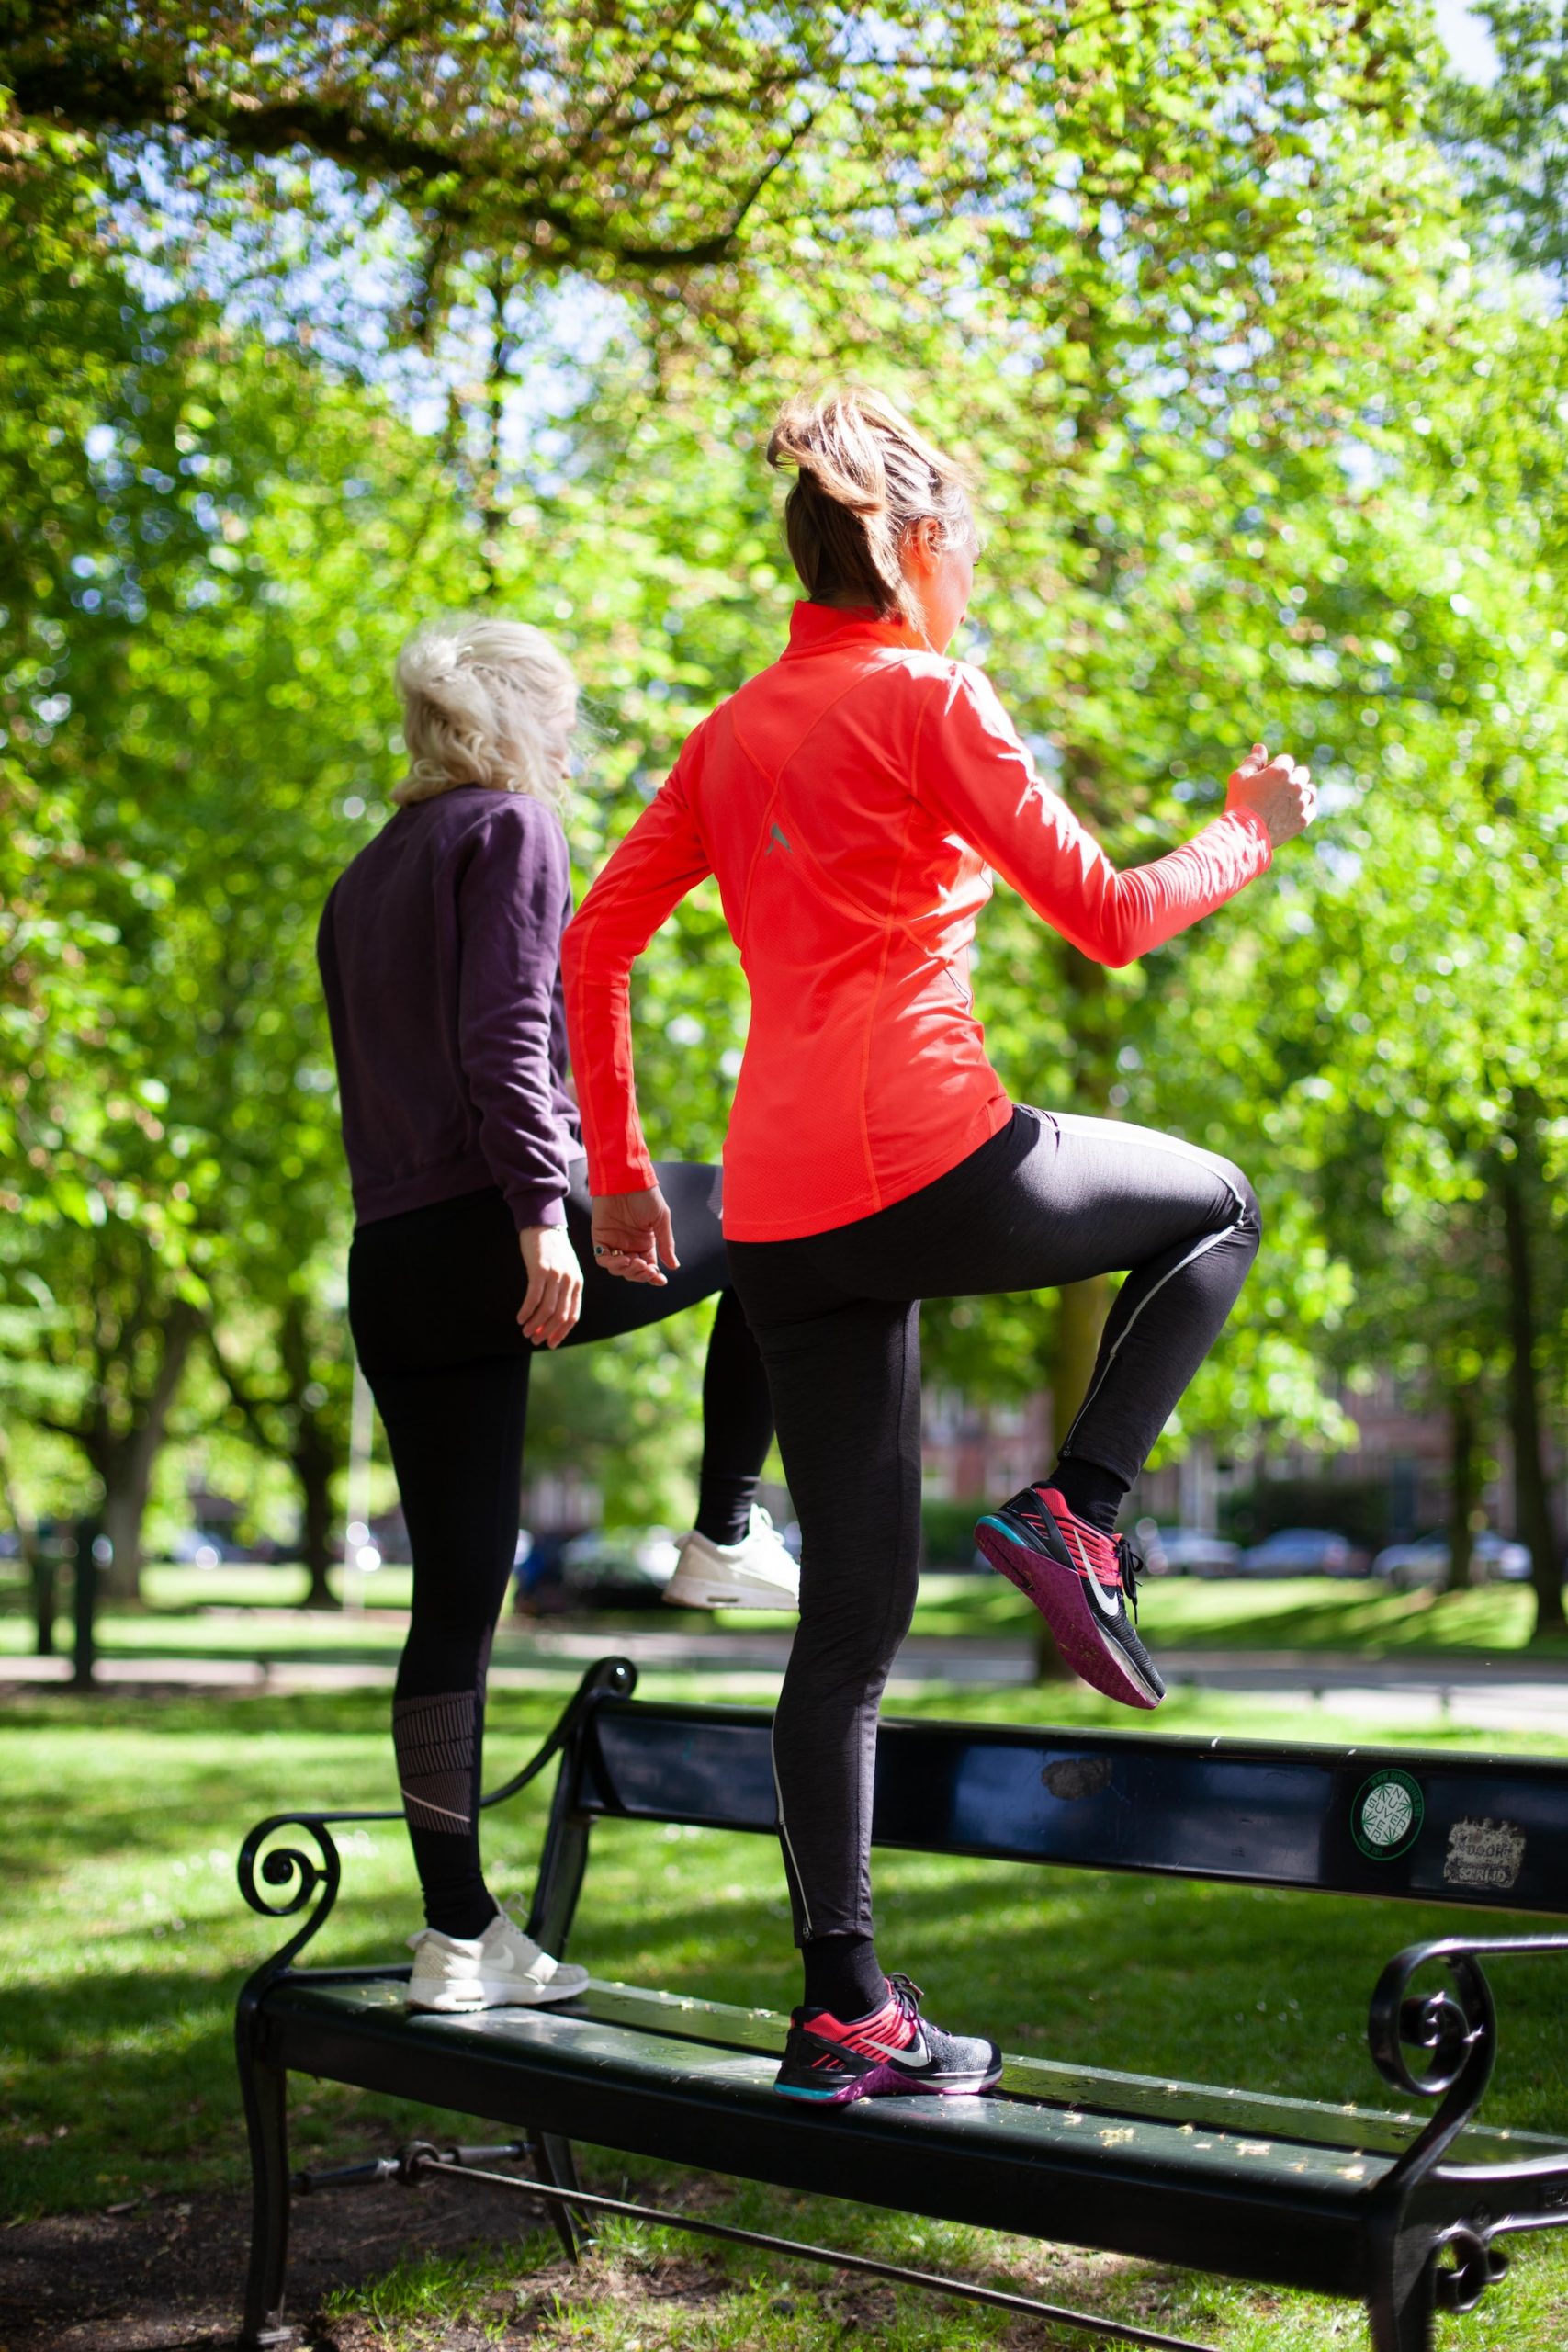 Allenamento percorso vita: gli esercizi per tenersi in forma al parco